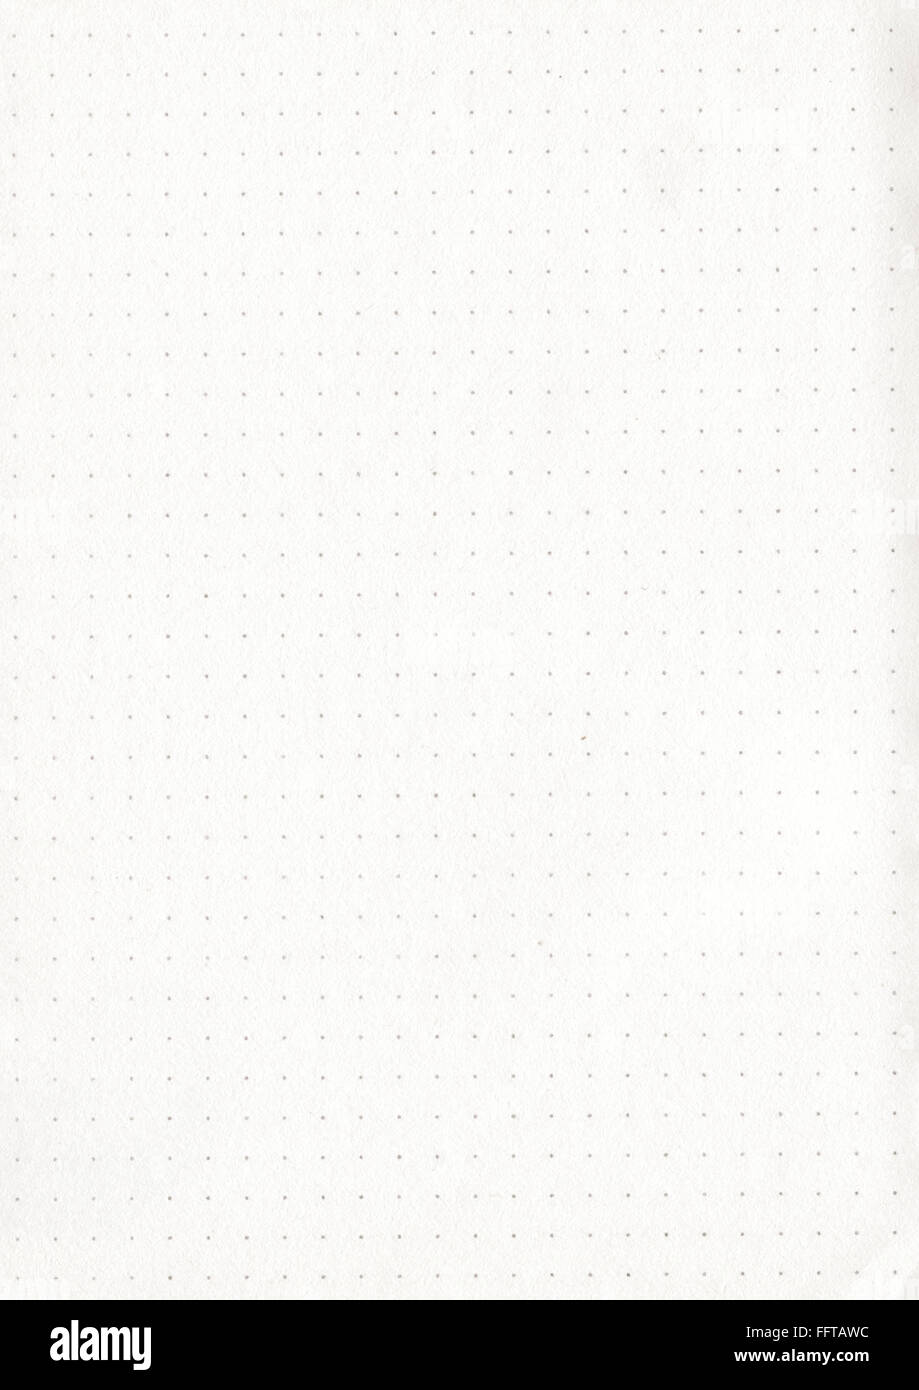 Papier blatt gepunktet punkte dots Zettel Kopierpapier Schreibunterlage schreiben papeterie stift malen zeichnen aufschreiben al Stock Photo